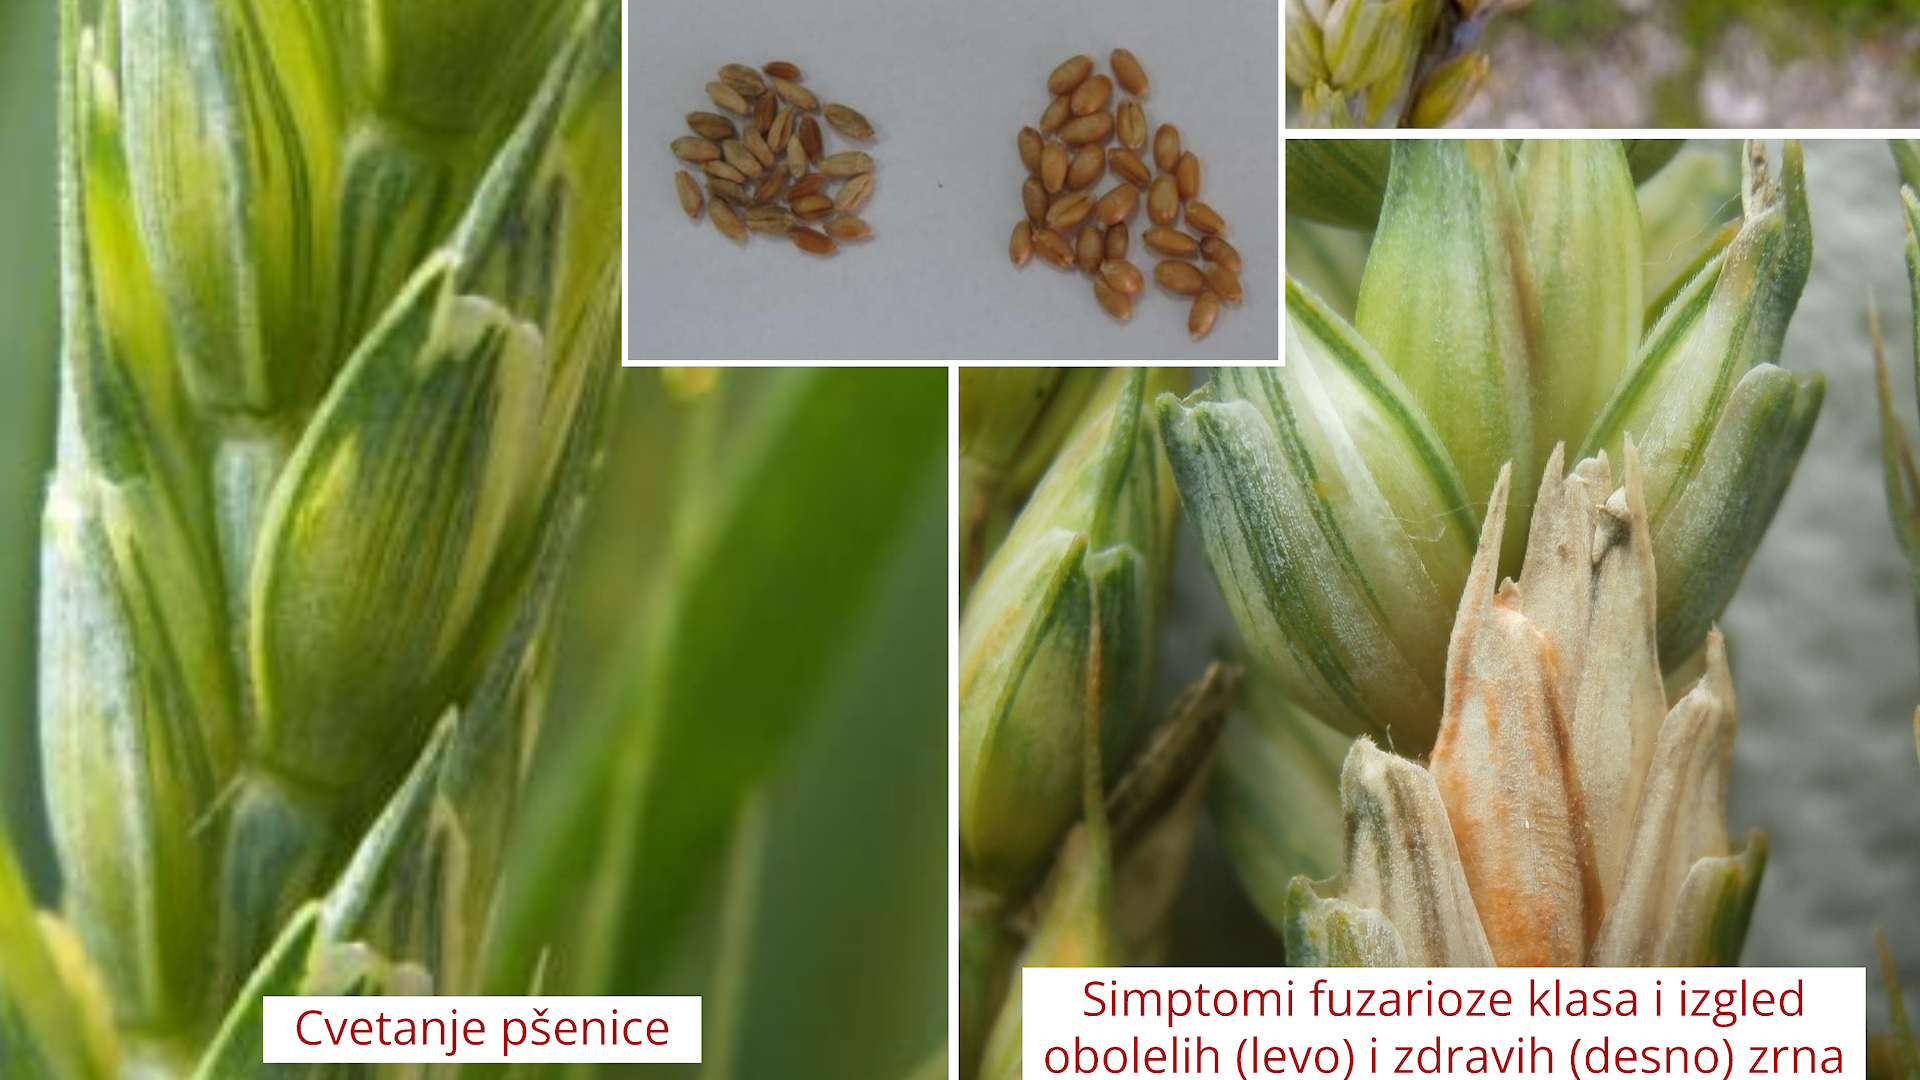 Opasnost od fuzarioze: Pšenica u osetljivoj fazi cvetanja